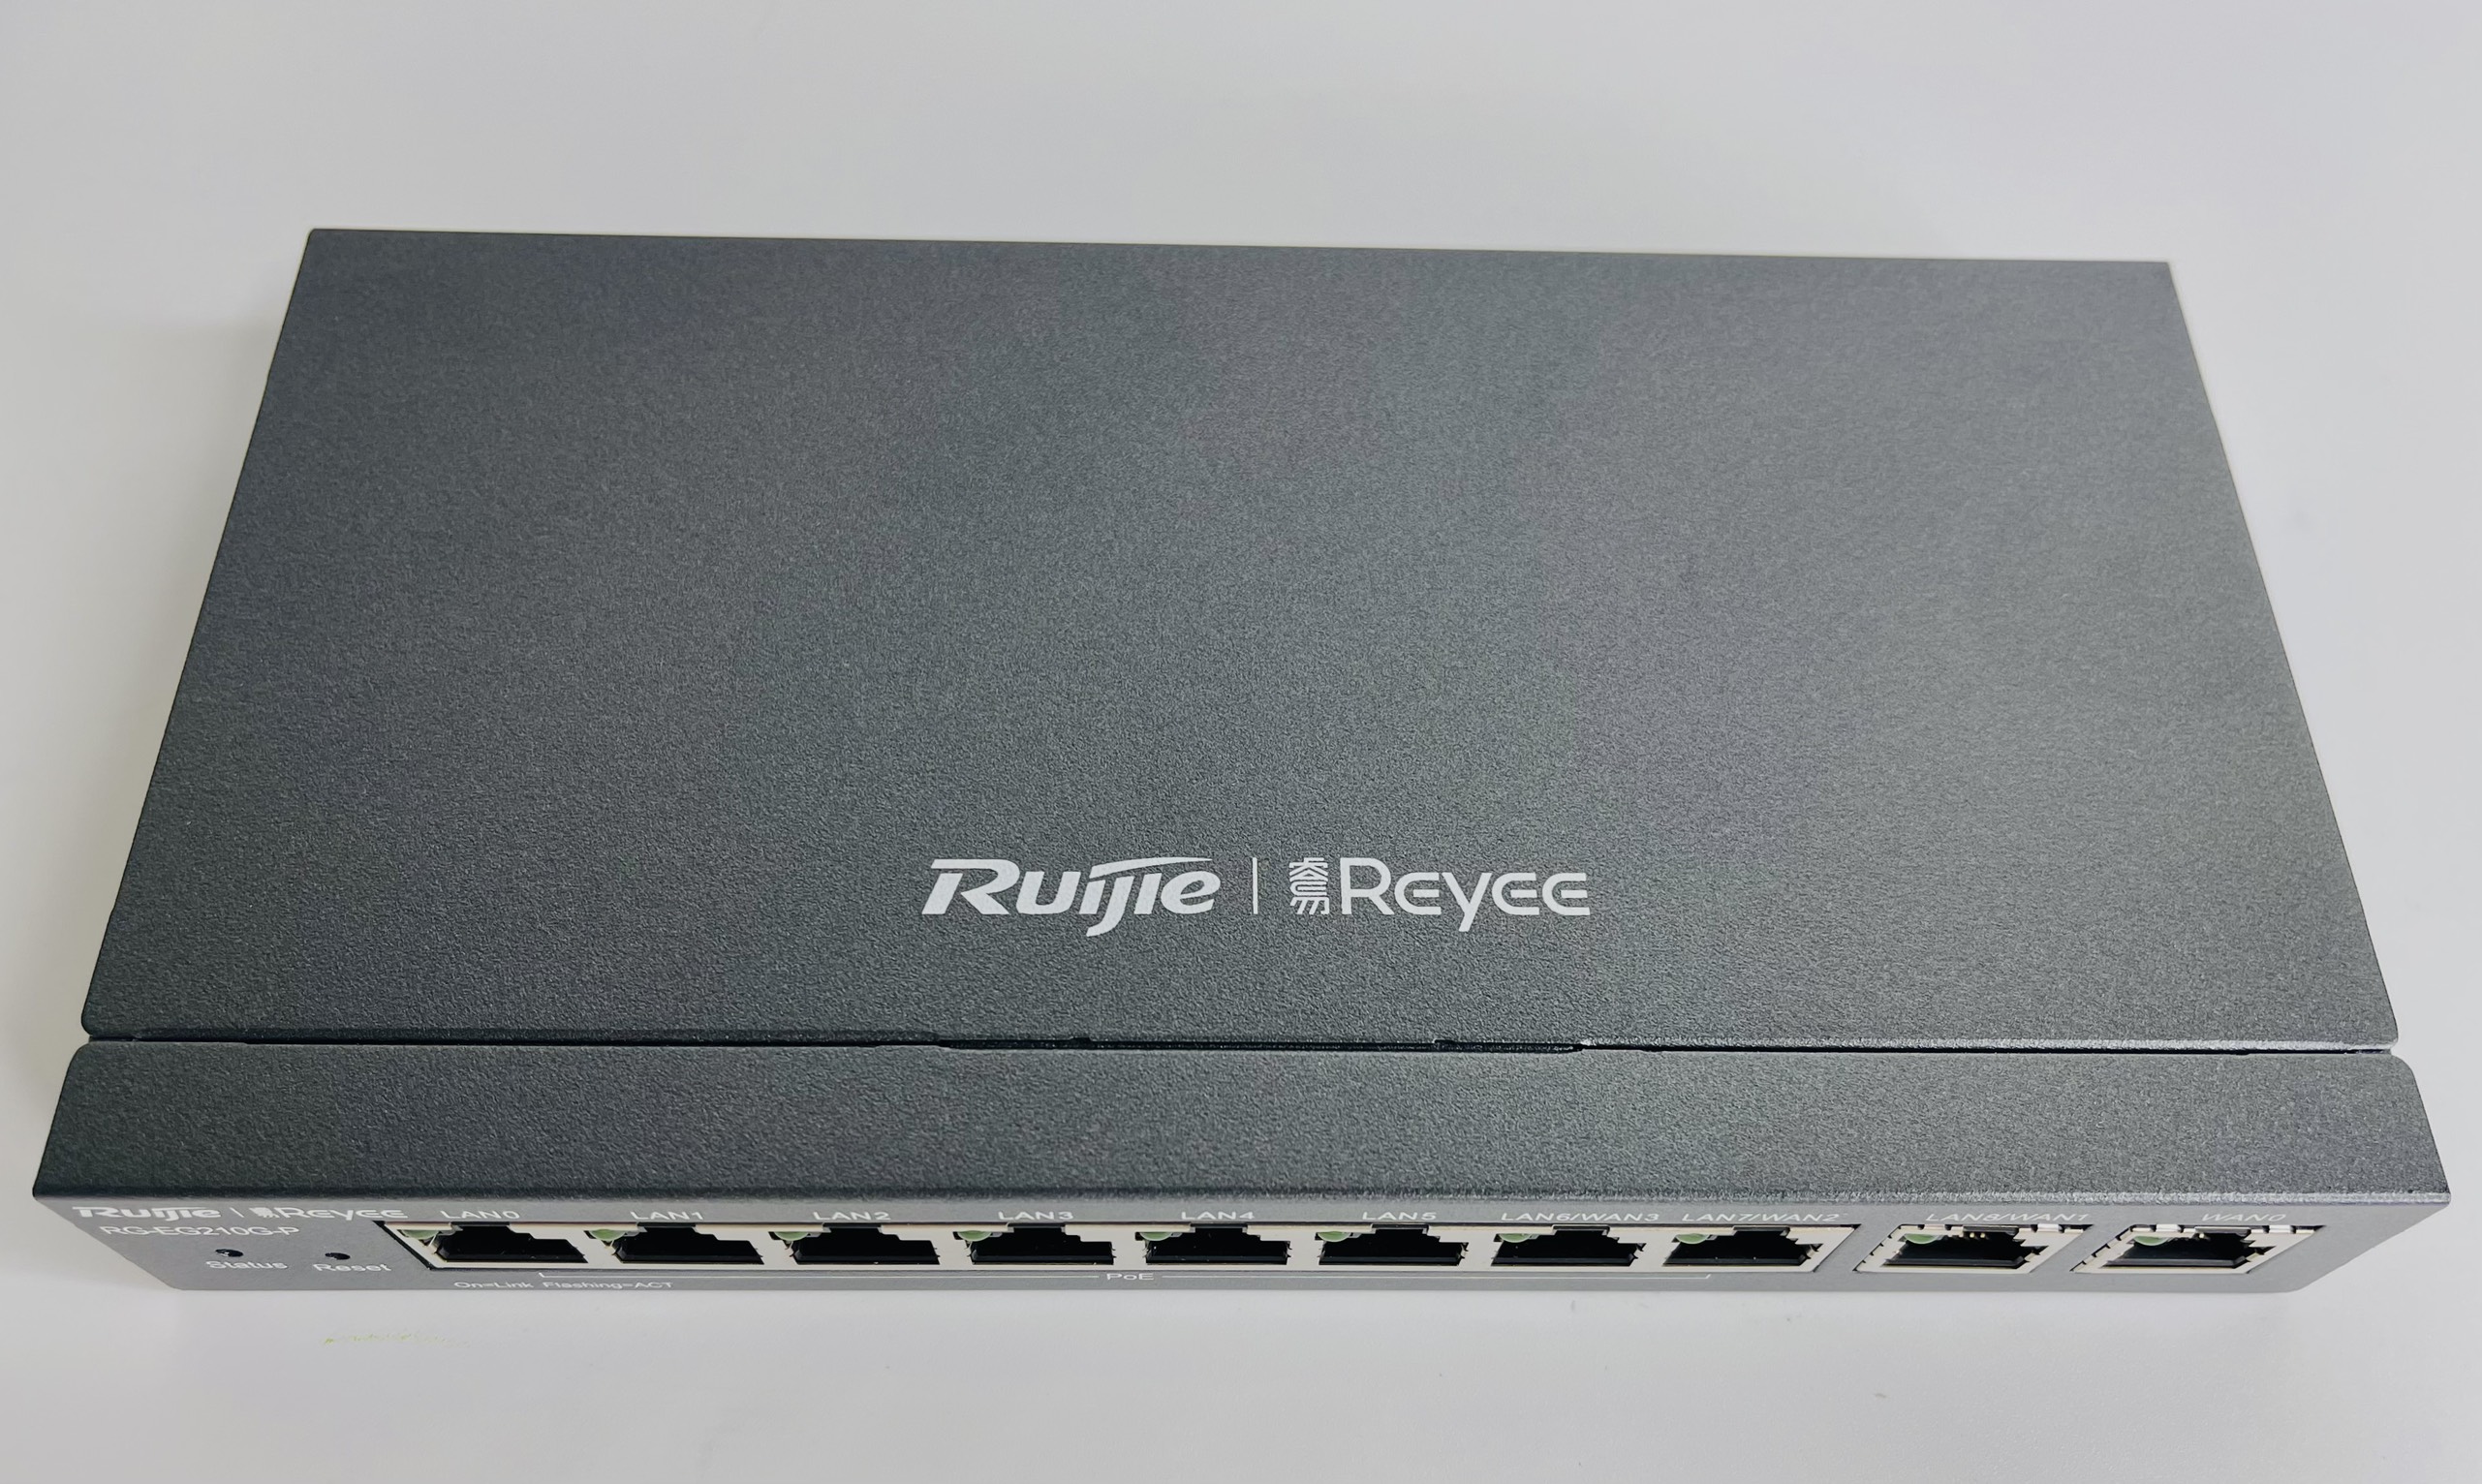 Router cân bằng tải Ruijie RG-EG210G-P - Cân bằng tải 2 WAN - Chịu tải 200 user - 8 cổng PoE+